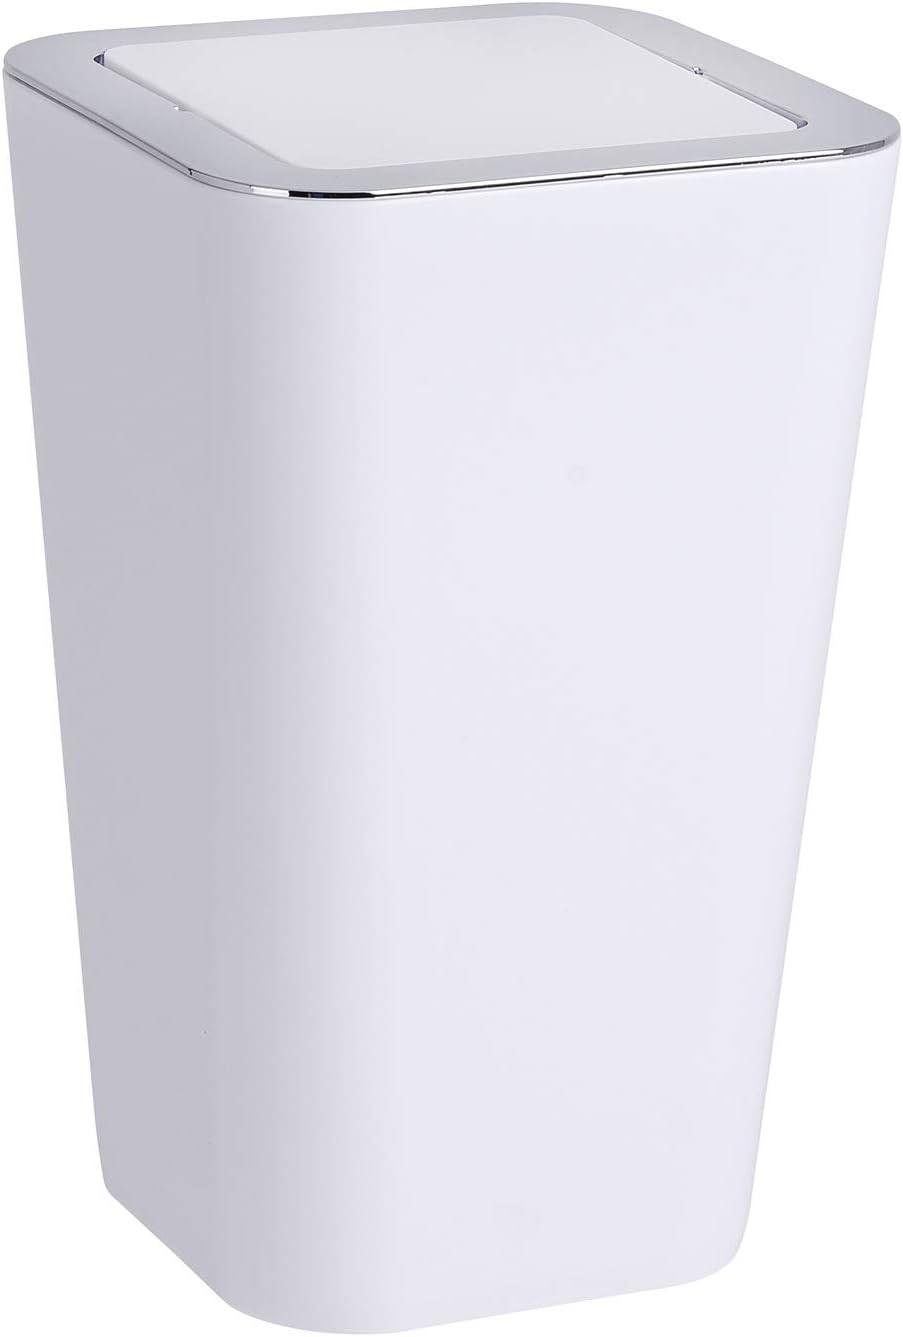 WENKO Kosmetikeimer Candy 6 Liter, Hygieneeimer, Badezimmer-Mülleimer mit Schwingdeckel ideal für Kosmetiktücher, Wattestäbchen & Co., Abfalleimer aus Kunststoff, BPA-frei, 18 x 28,5 x 18 cm, Weiß